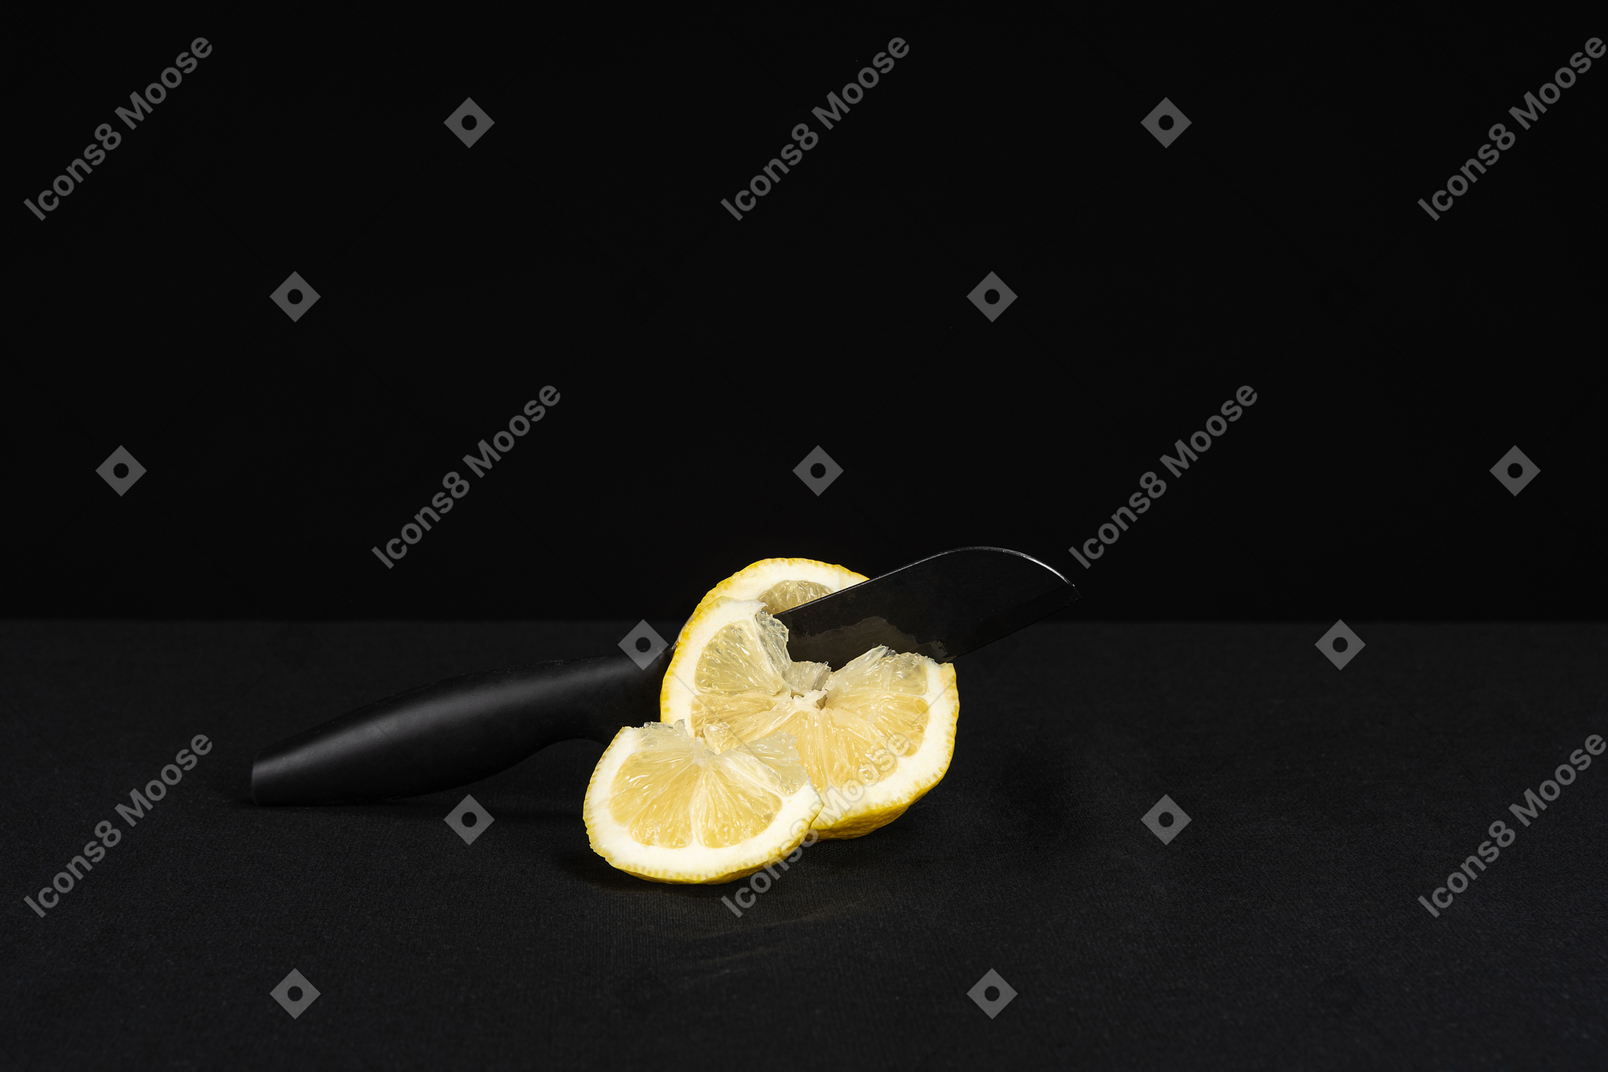 칼 절단 레몬 검정색 배경